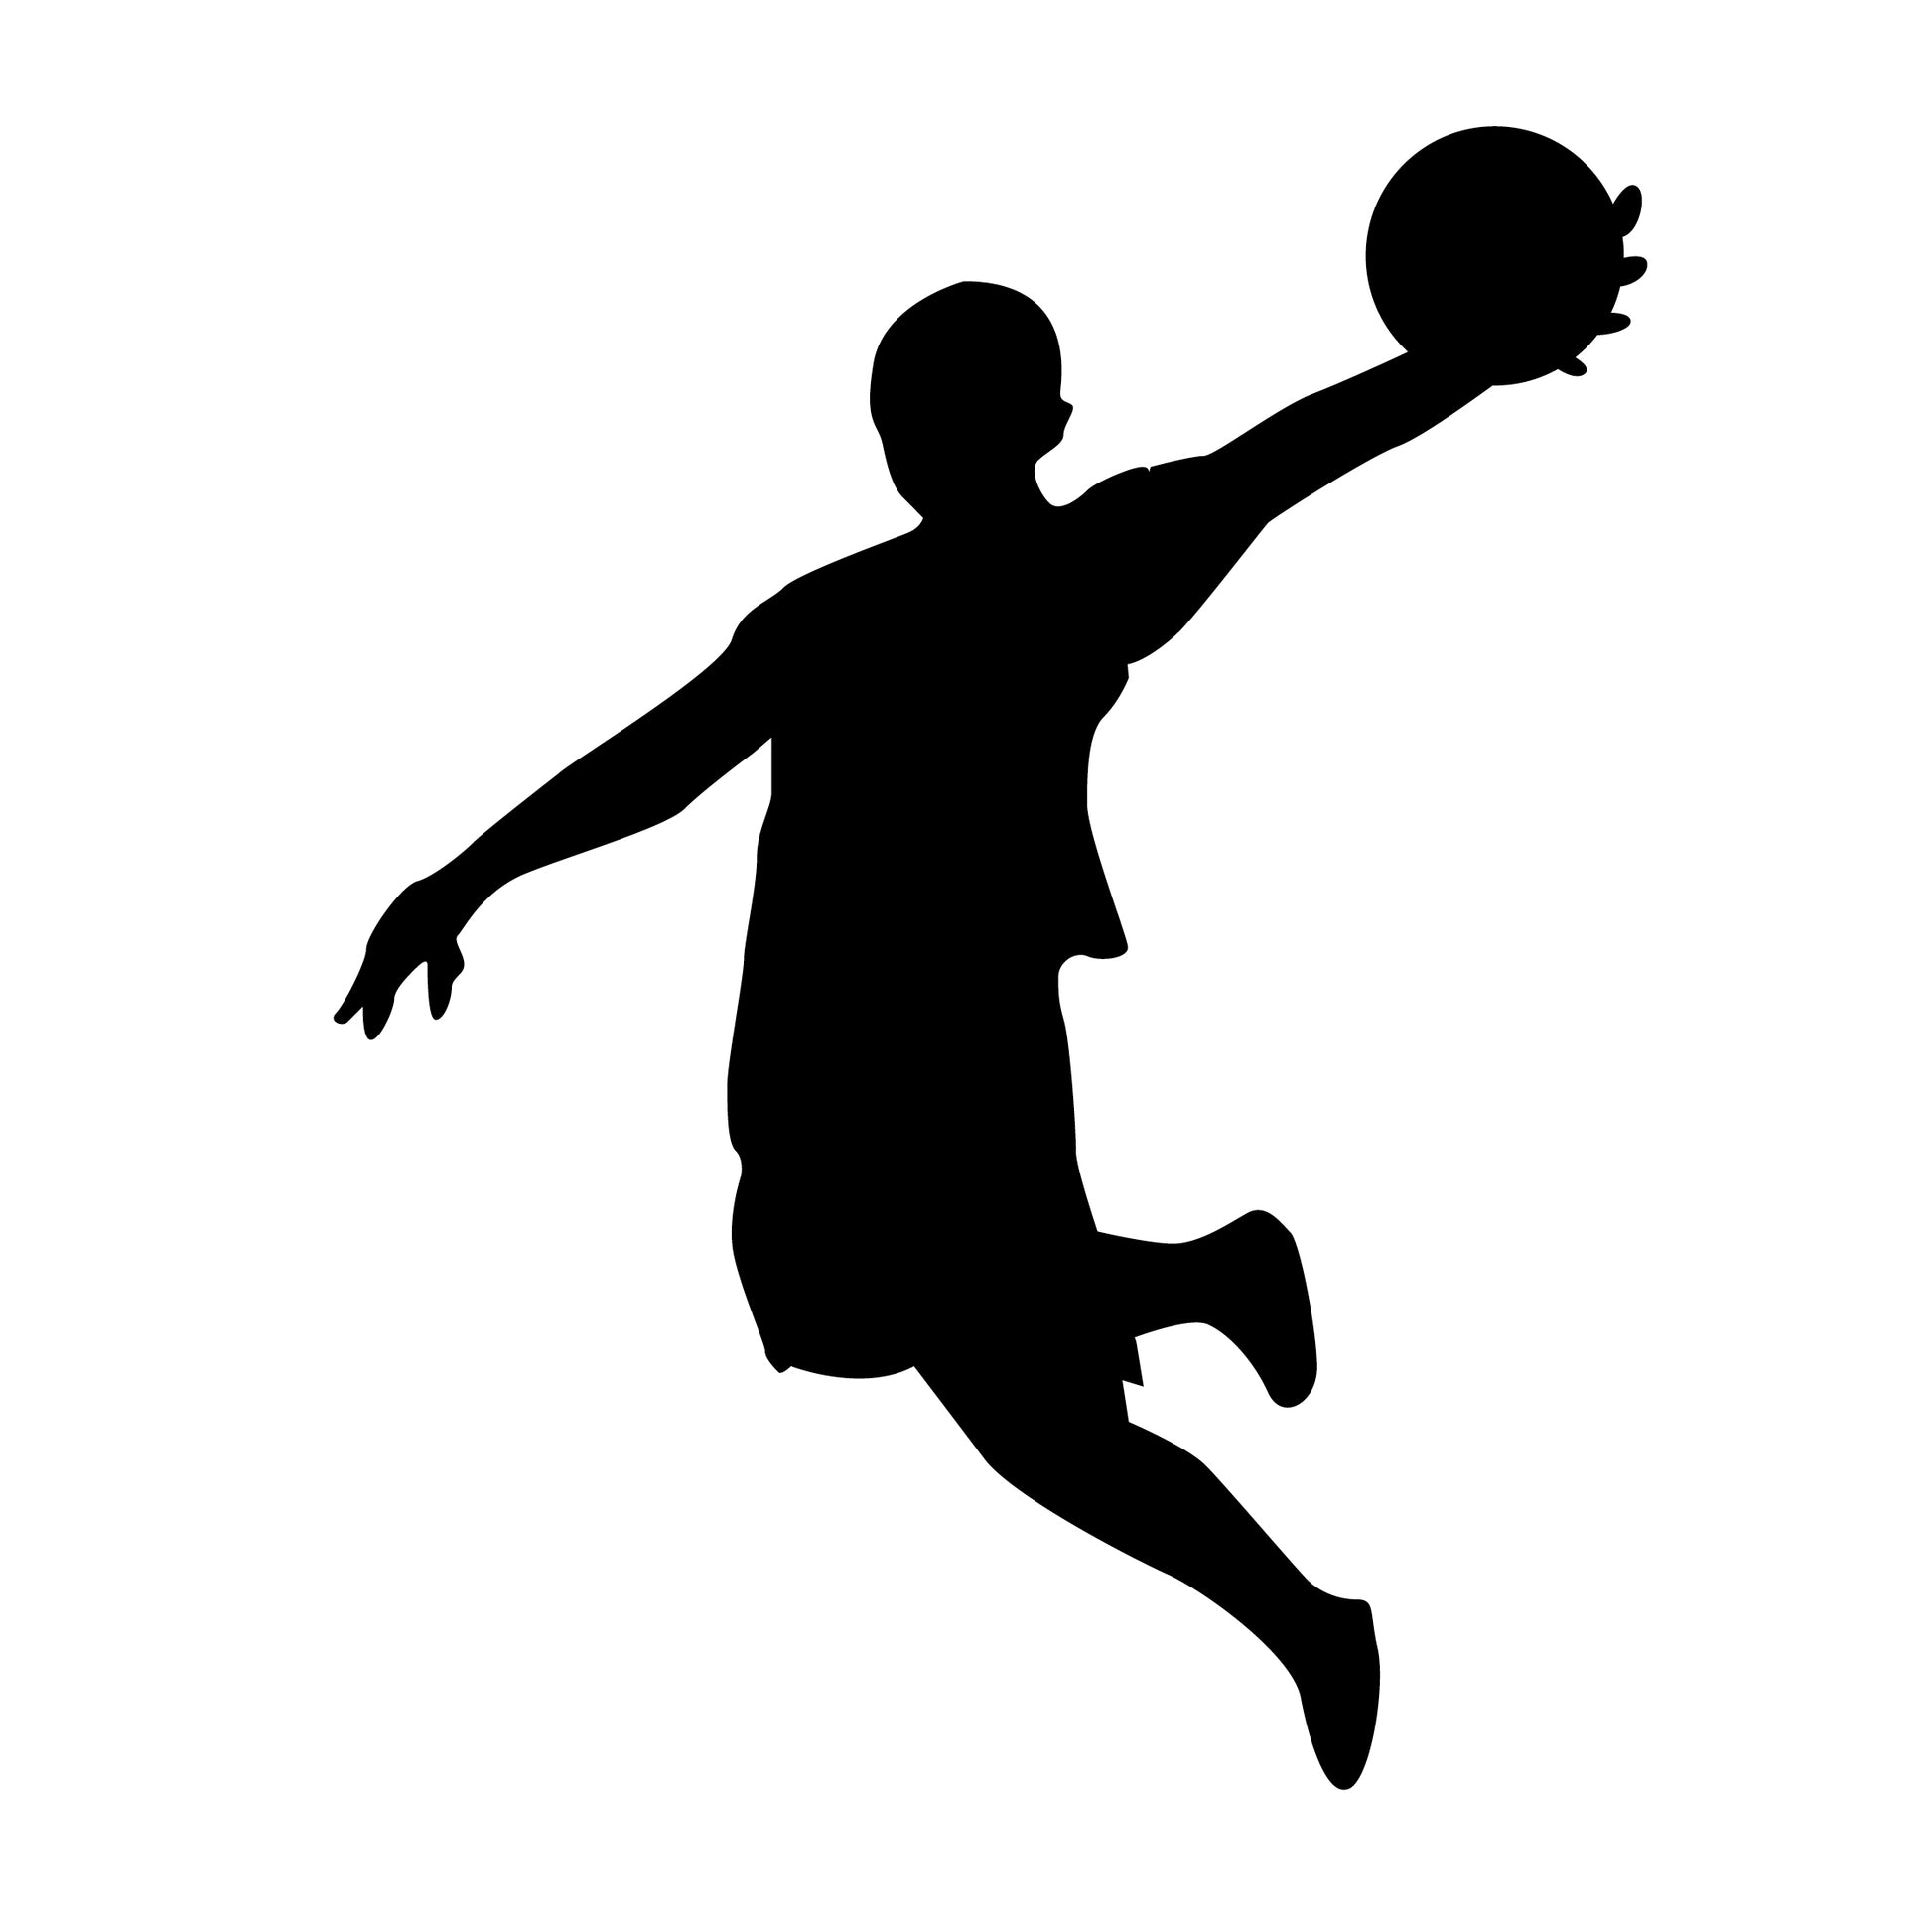 Basketball Man dunking basketball Jordan vinyl sticker decal for kids room above desk design